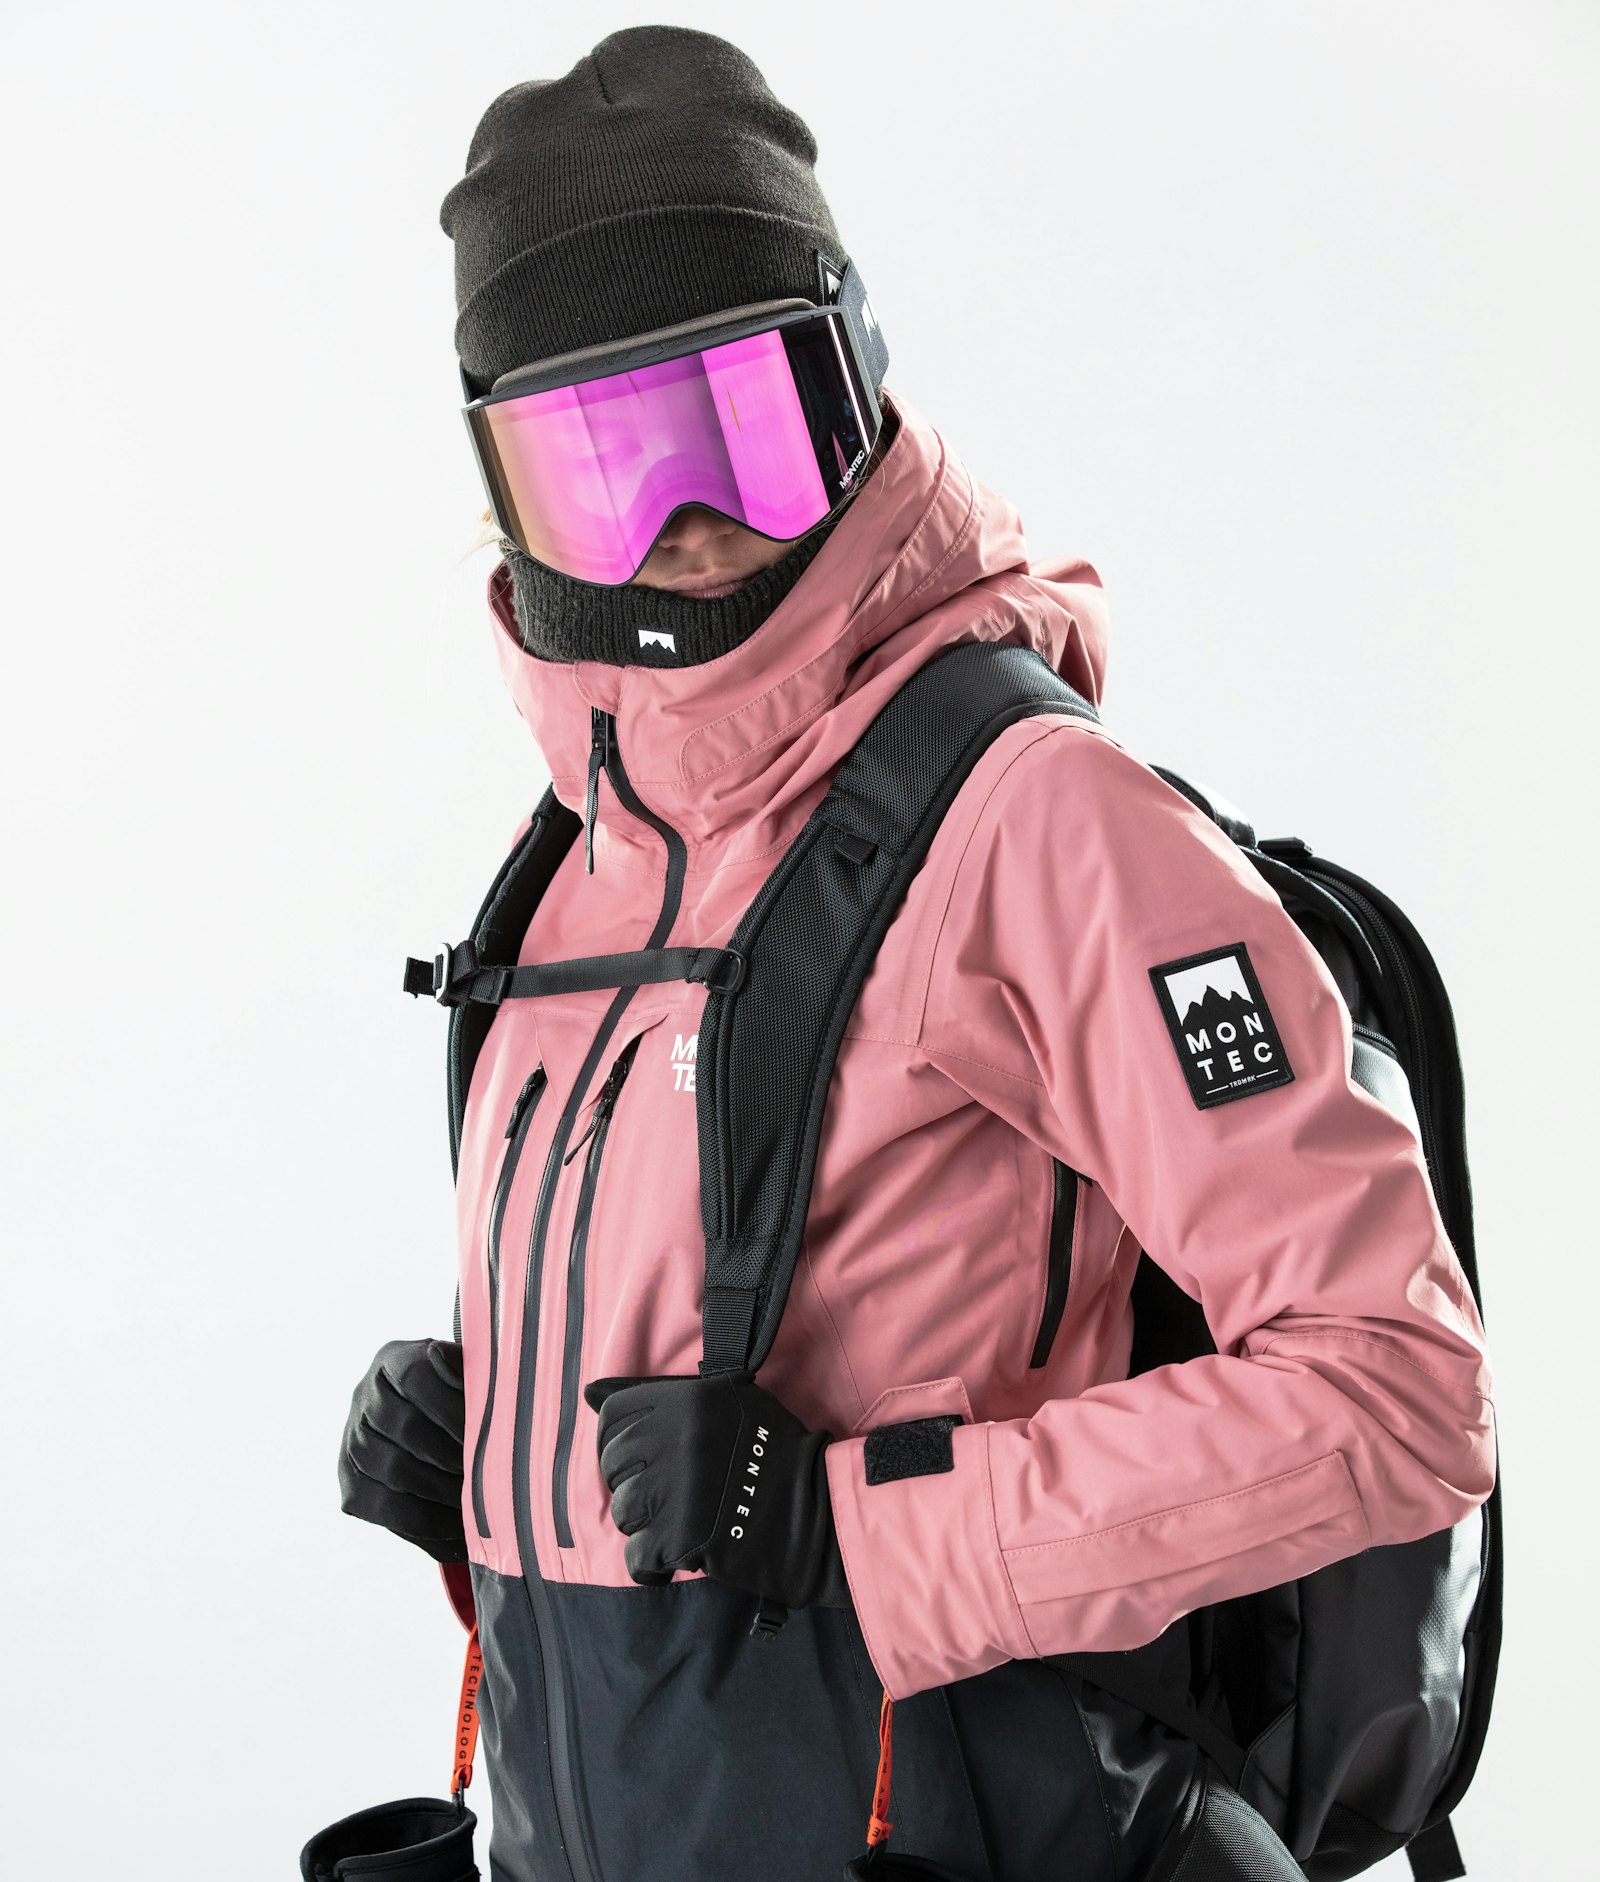 Moss W 2020 スノーボードジャケット レディース Pink/Black